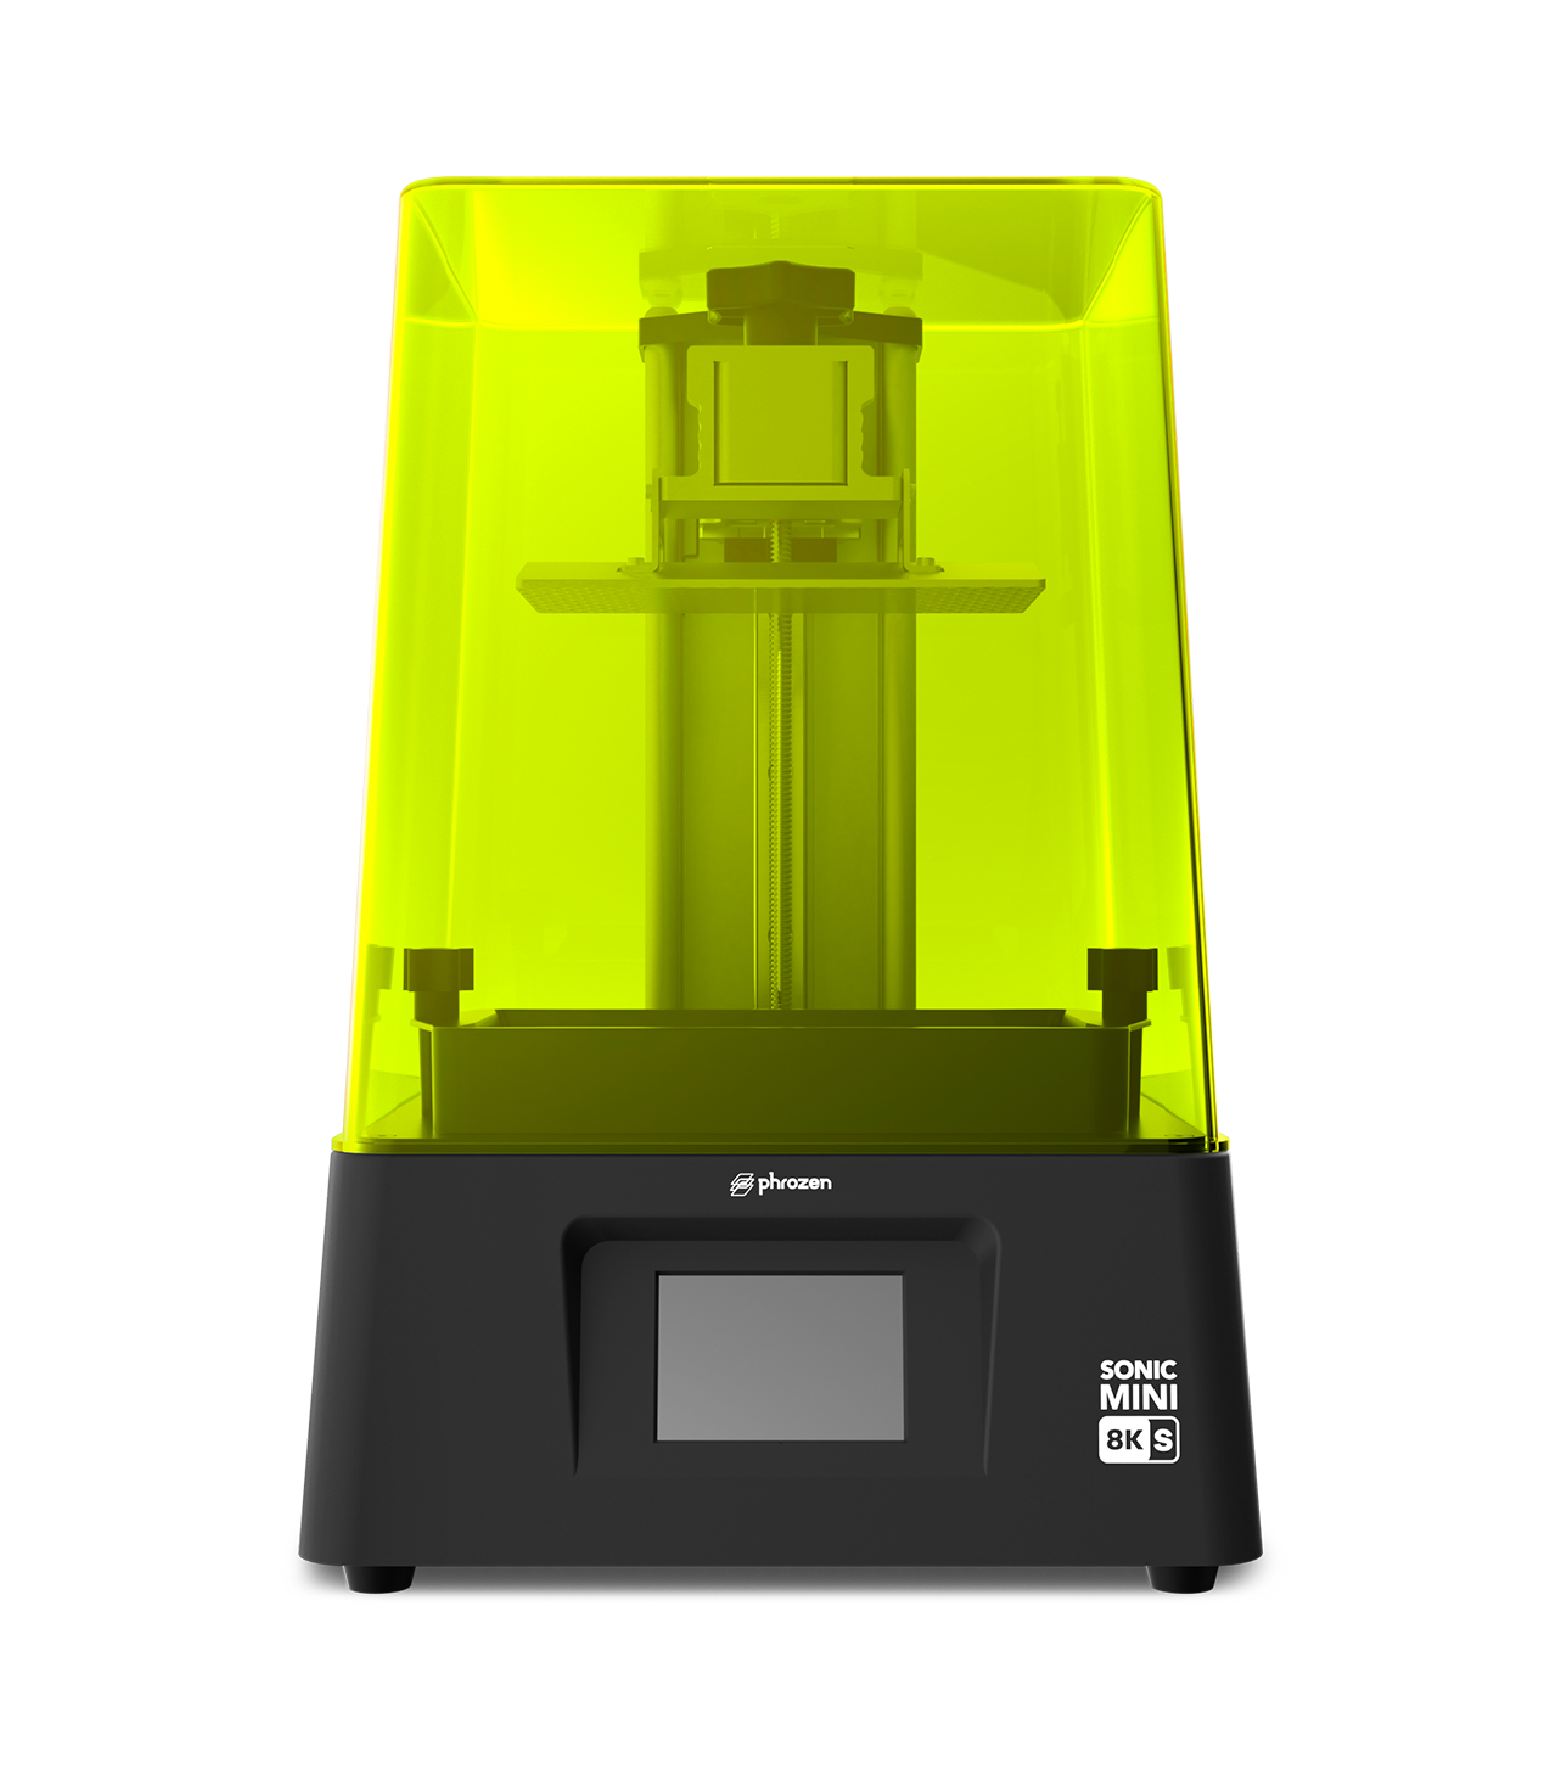 【Pre-Order】Phrozen Sonic Mini 8K S - LCD 3D Printer